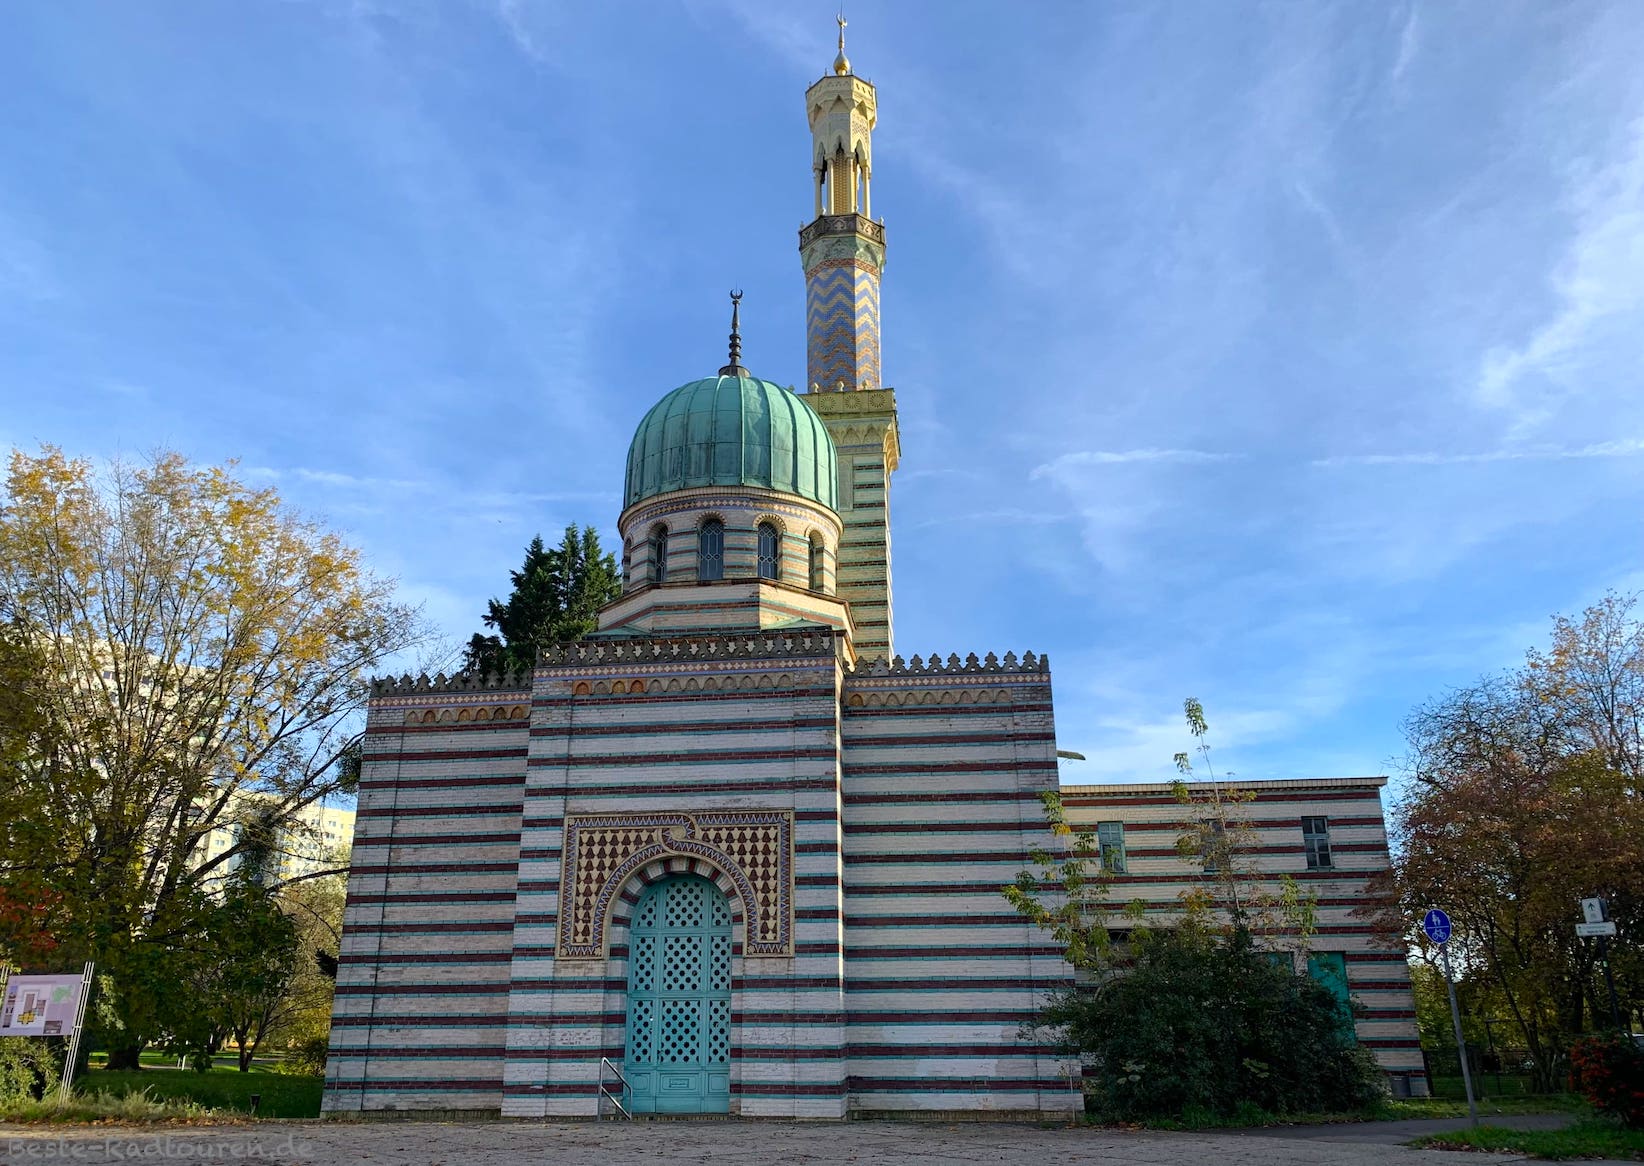 Dampfmaschinenhaus bzw. Pumpenhaus in Potsdam im Stil einer Moschee, Foto von vorn